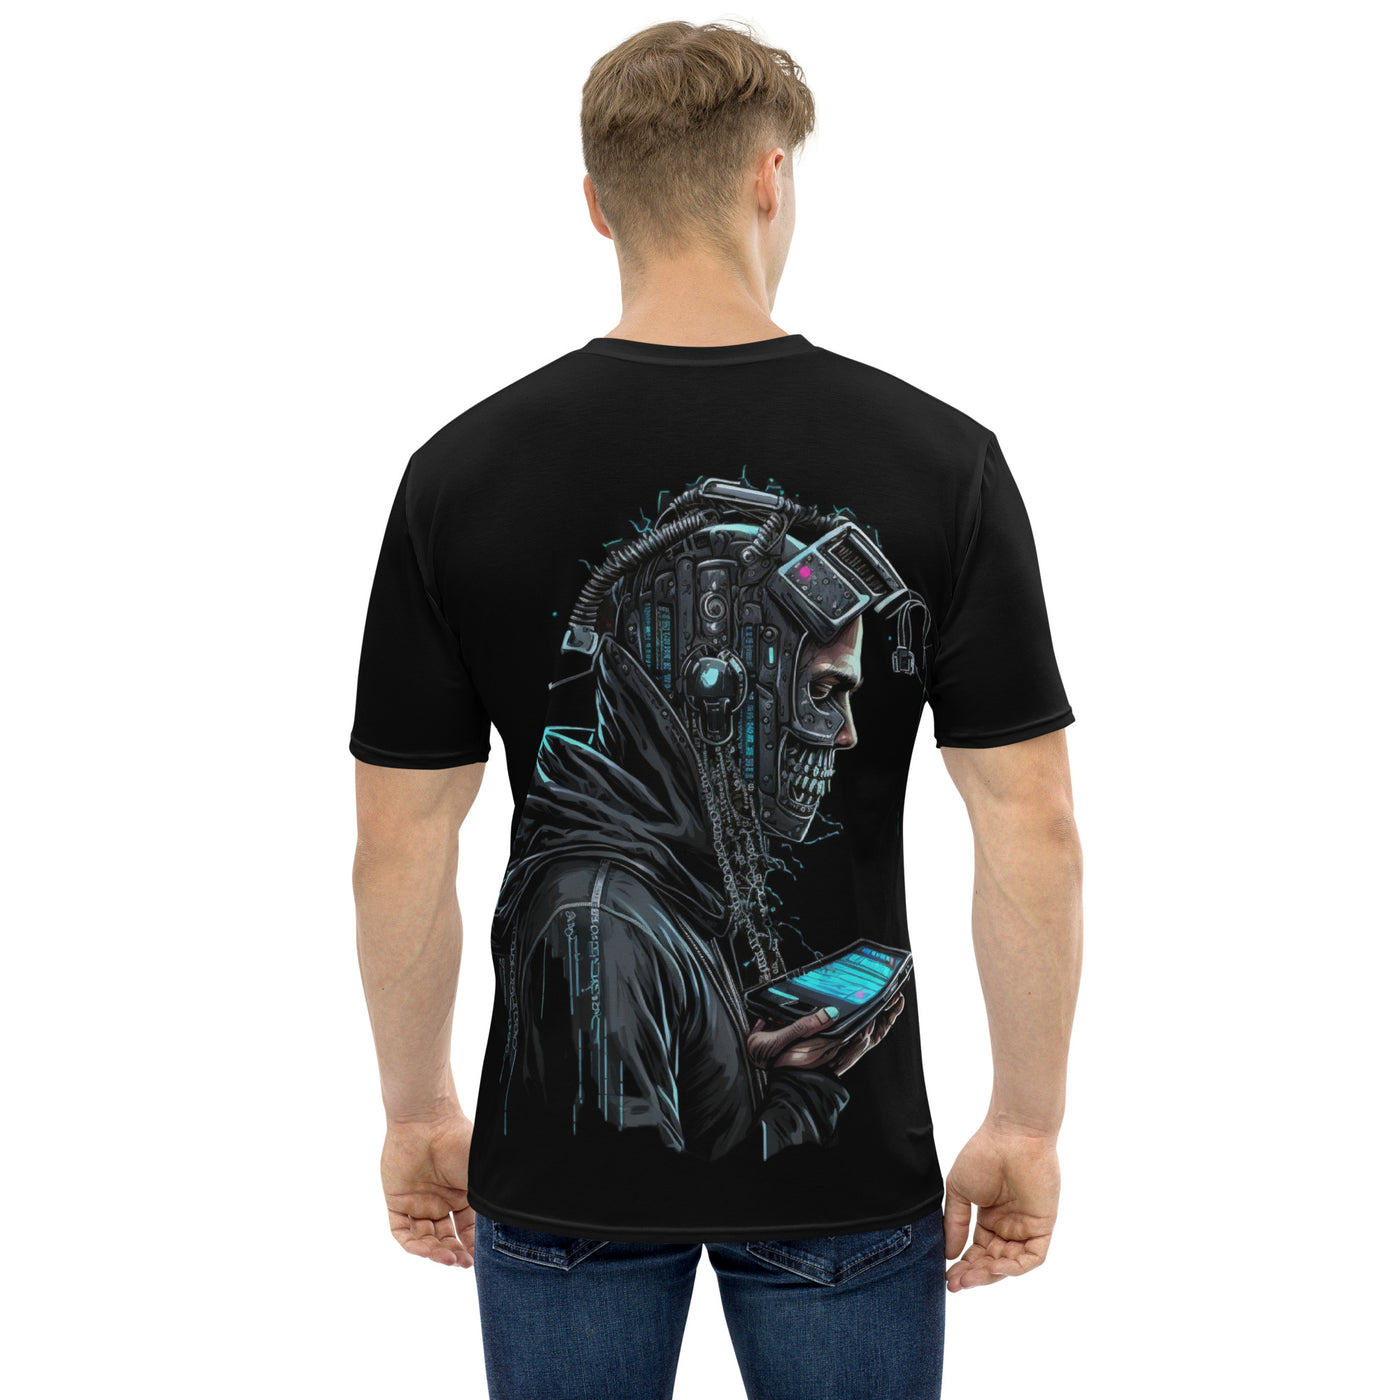 Cyberware assassin v1 - Men's t-shirt (back print)